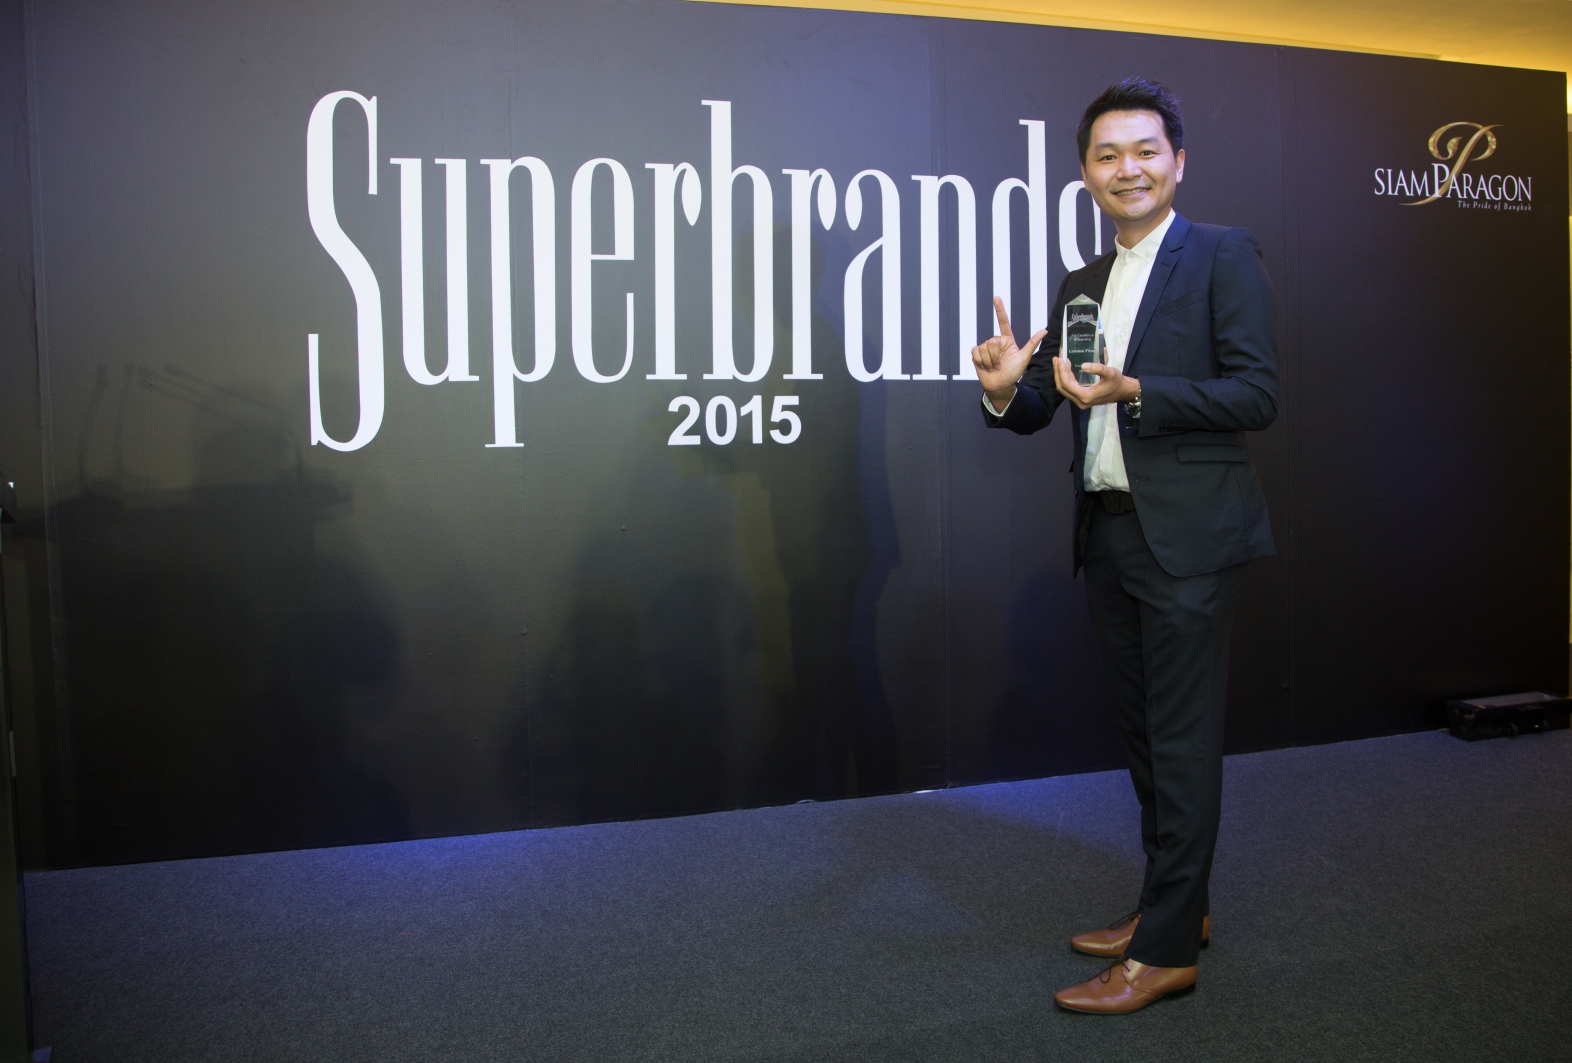 ลามิน่าคว้ารางวัลสุดยอดแบรนด์แห่งปี 2015 (Superbrands 2015) ต่อเนื่องถึง 12 ปี